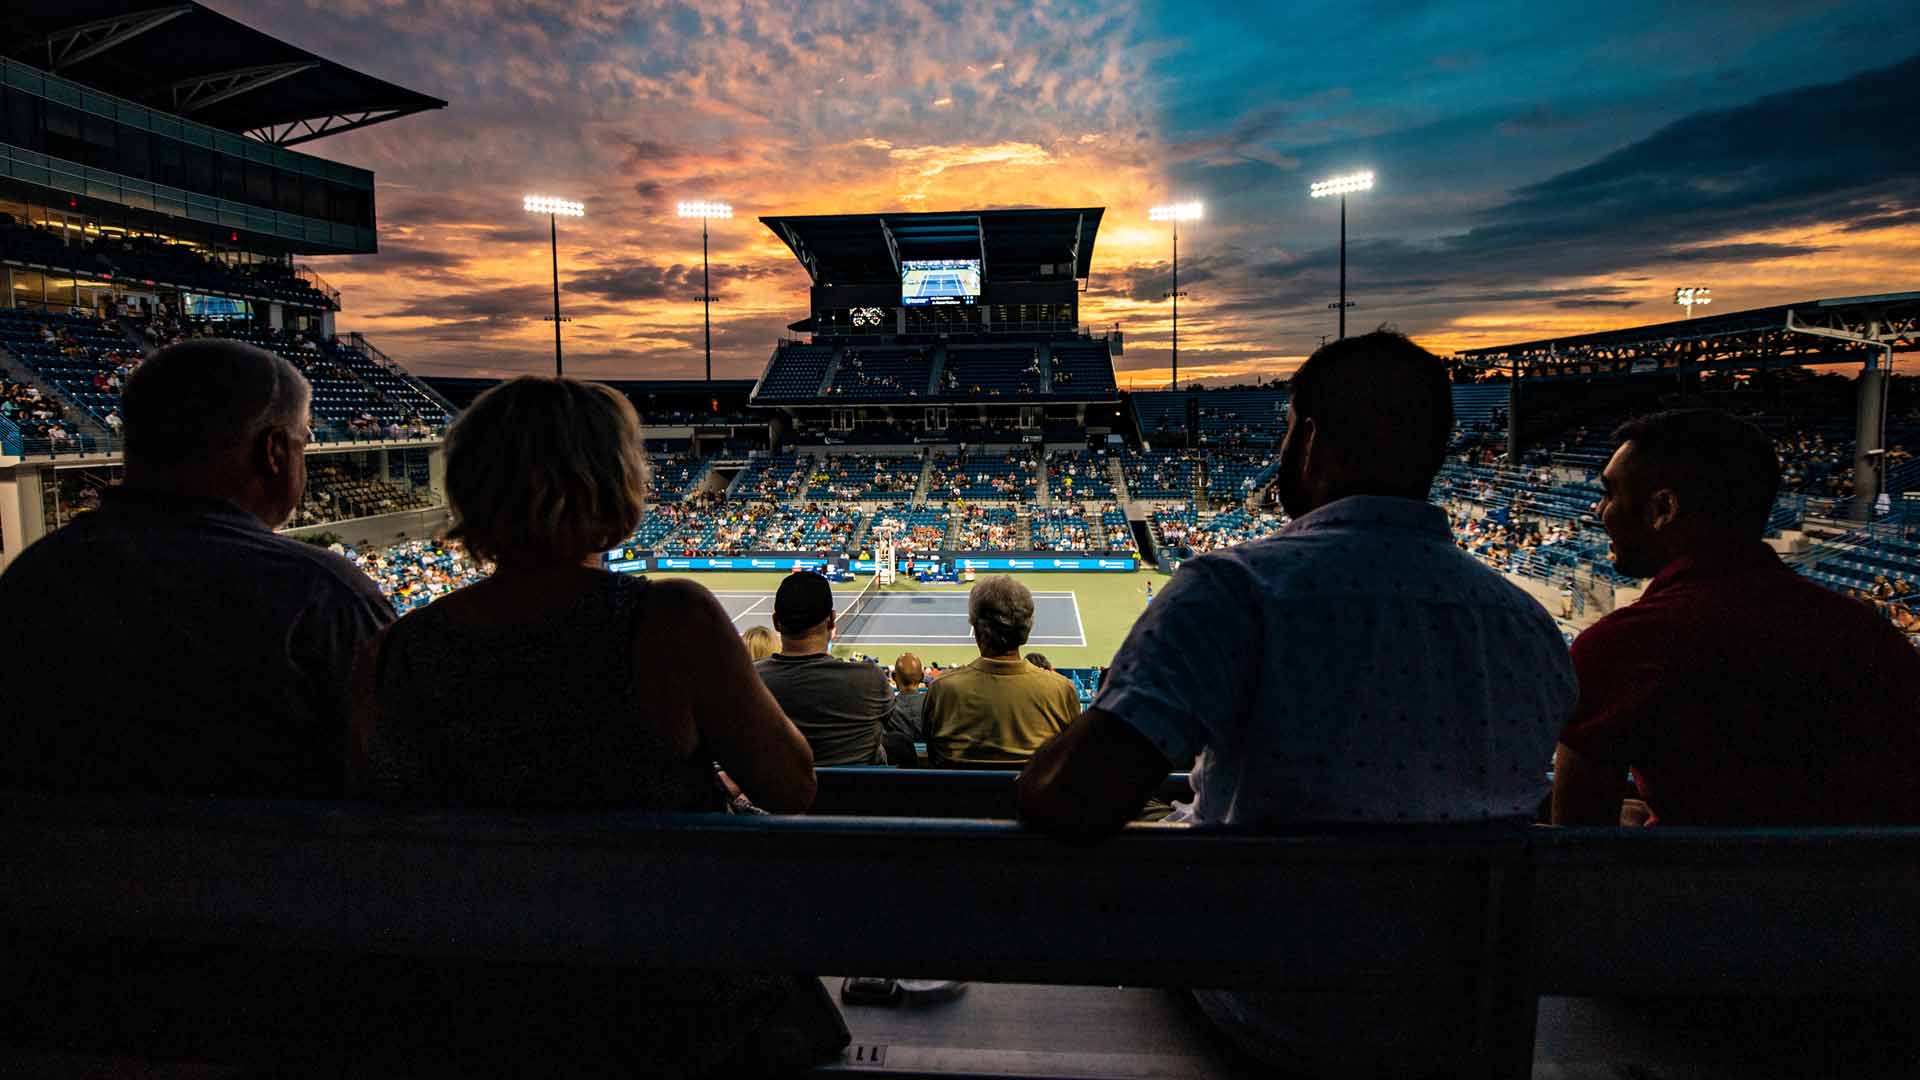 ATP de Cincinnati - Masters 1000 - História, Formato, Campeões e Onde  Assistir - Smash Tênis